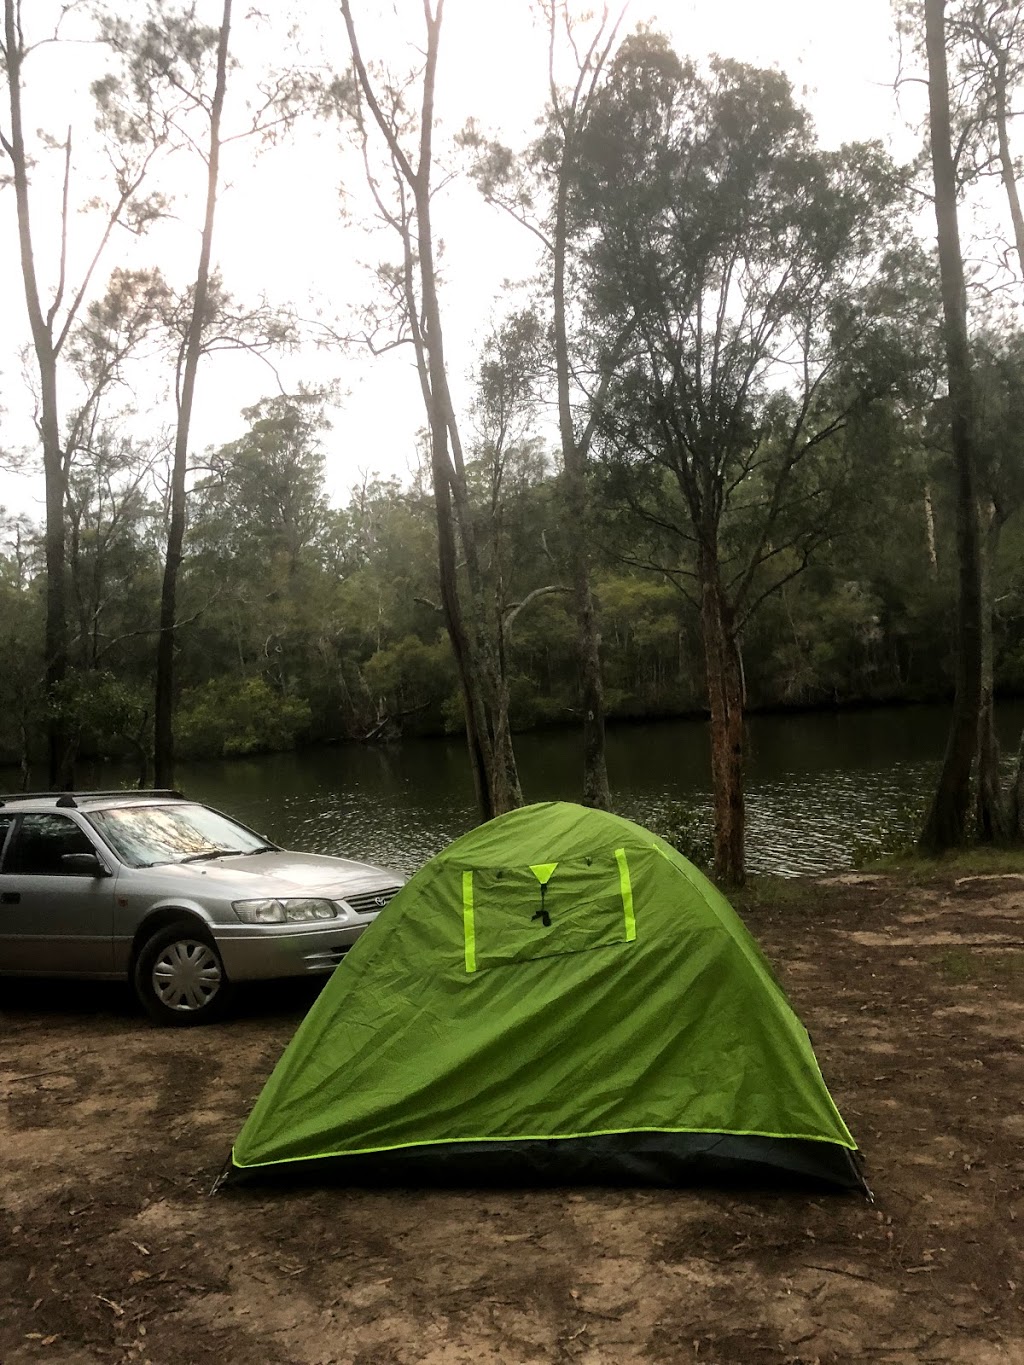 Ferny Creek campground | campground | Ferny Creek Road, Wootton NSW 2423, Australia | 0265910300 OR +61 2 6591 0300